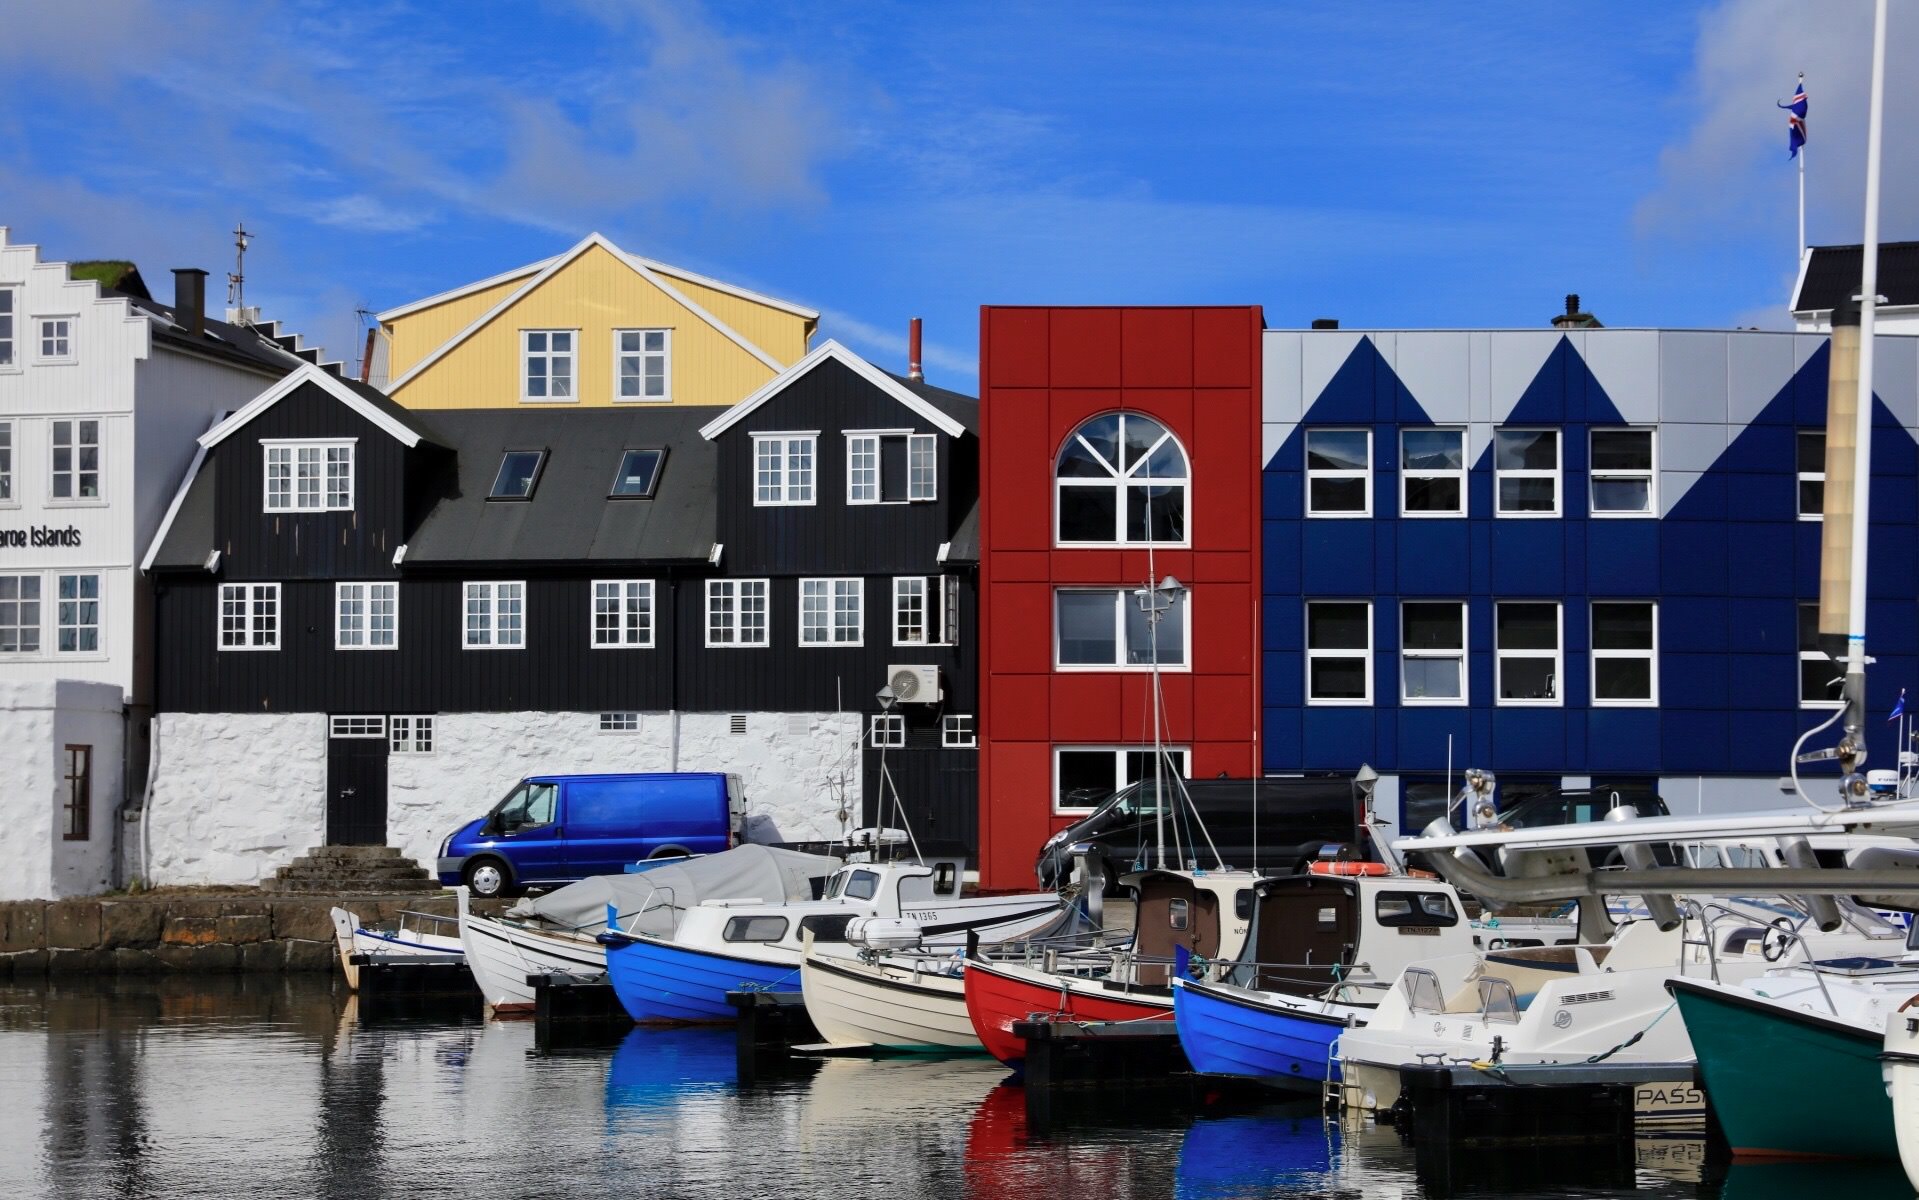 Port of Torhavn Faroe Islands. June 2017